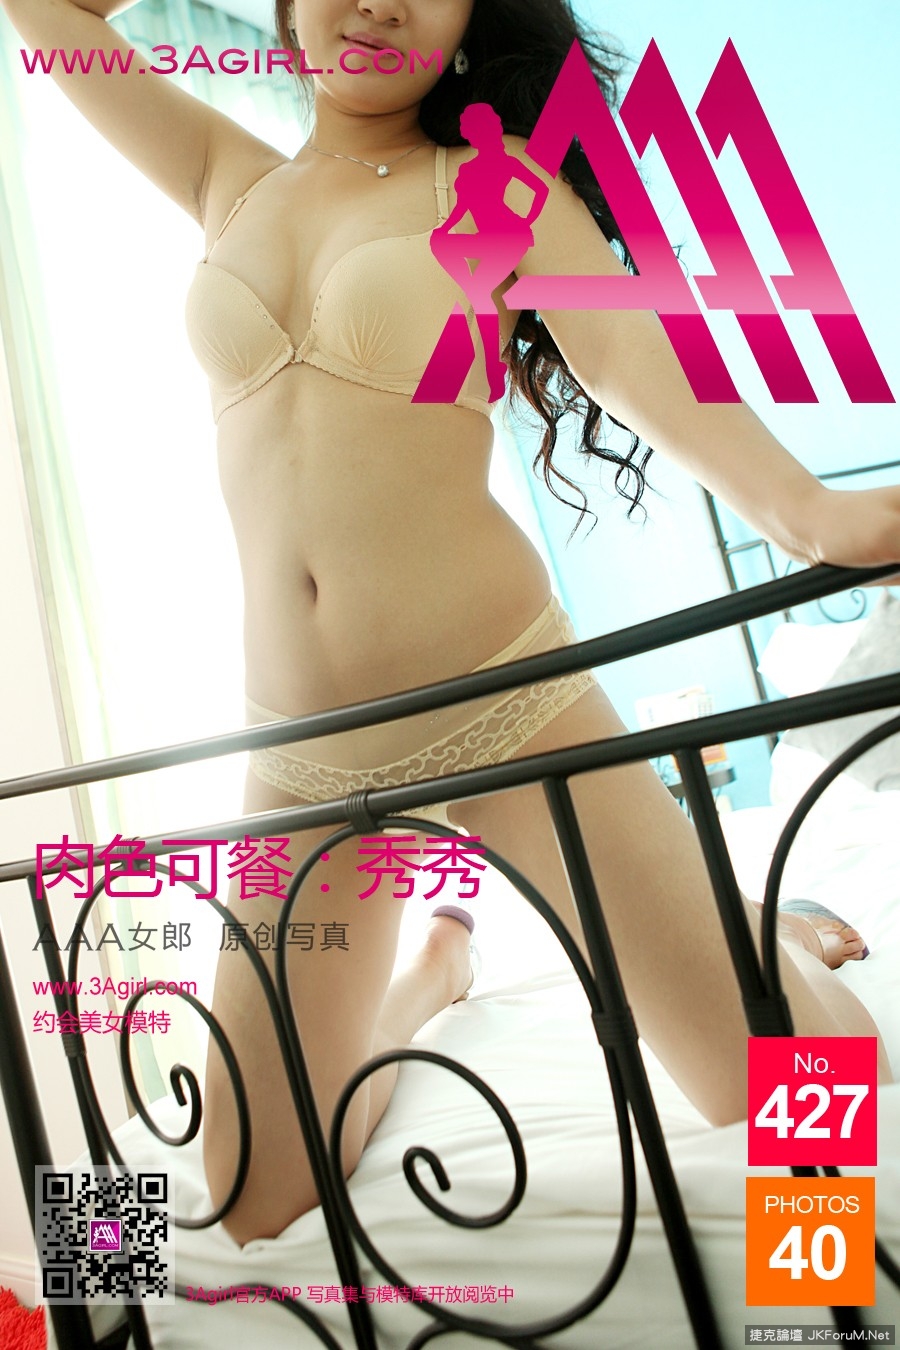 【3Agril系列】NO.426肉色可餐-秀秀【41P】 - 貼圖 - 絲襪美腿 -